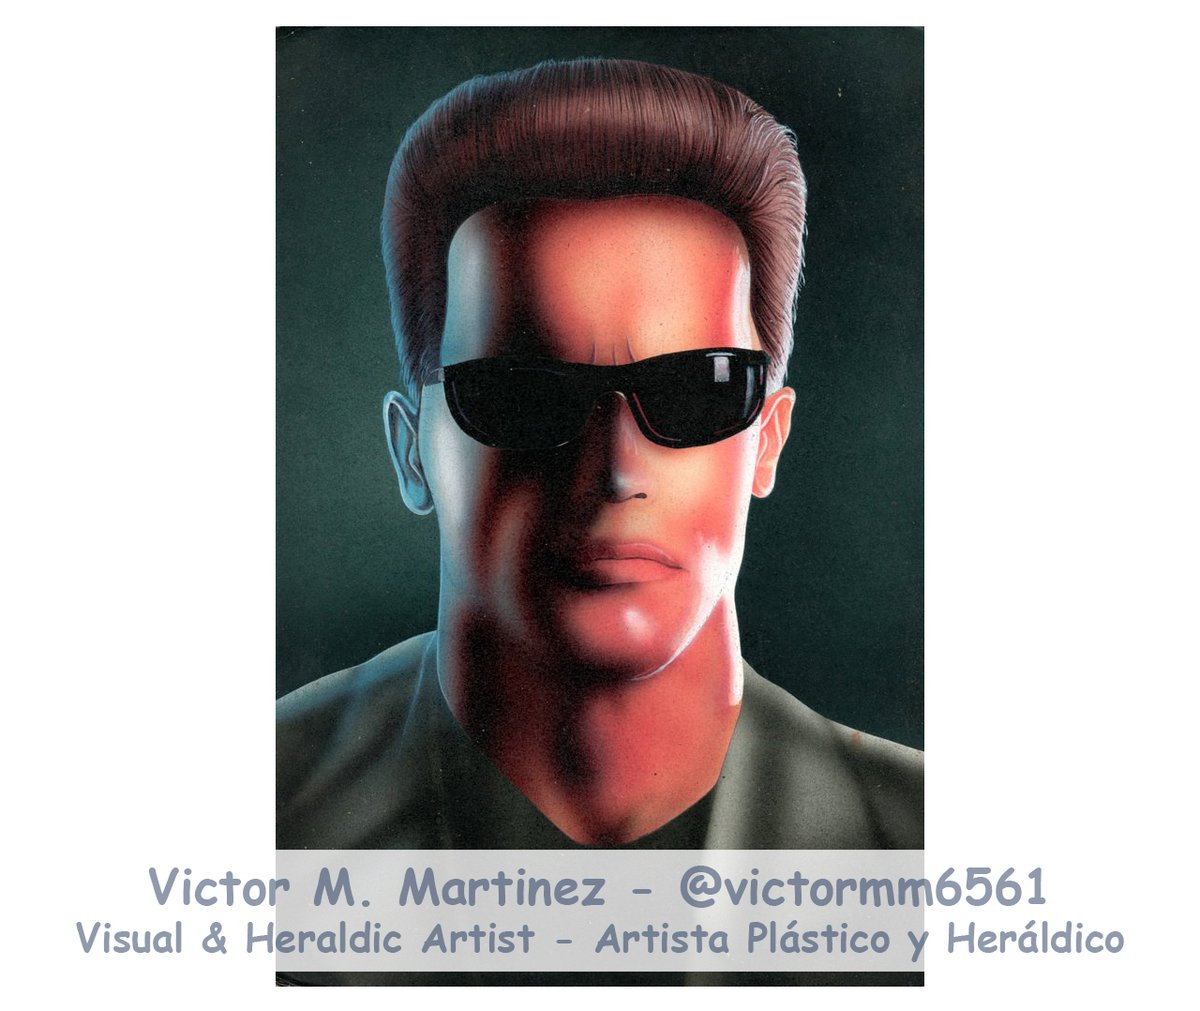 Arnold Schwarzenegger as #Terminator como Terminator, by por el Artista Plástico y Heráldico Victor M. Martinez, #Arte en Aerografía #Airbrushing 28x22 cms, apoye y siga mi Obra. 

#Schwarzenegger #arnold #arnoldschwarzenegger #ArtForSale 💸 #art 🎨 #Carabobo #Arte #Venezuela 🇻🇪